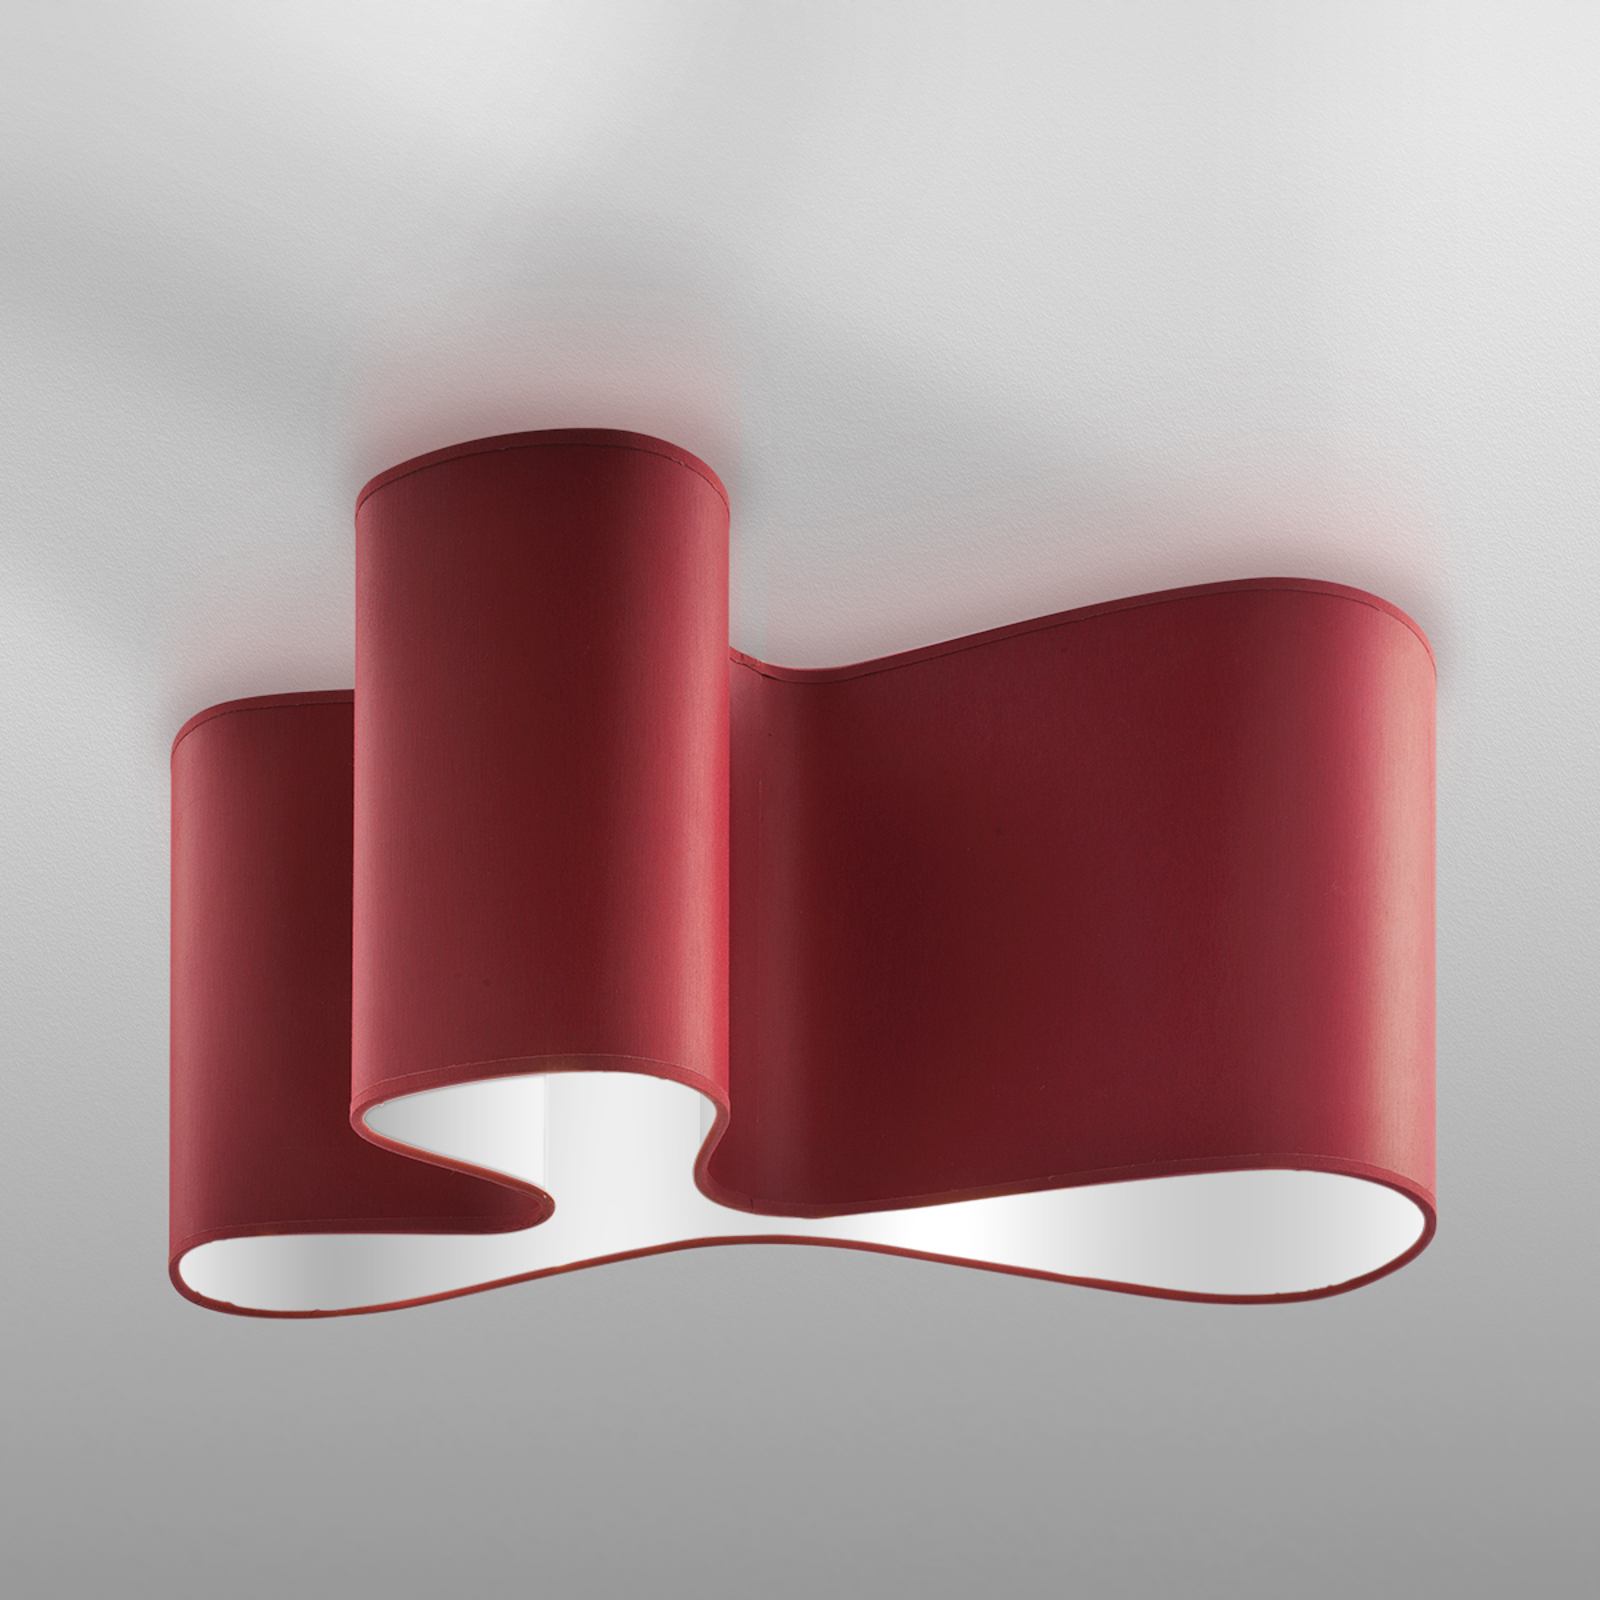 Designer-Deckenleuchte Mugello rot/weiß